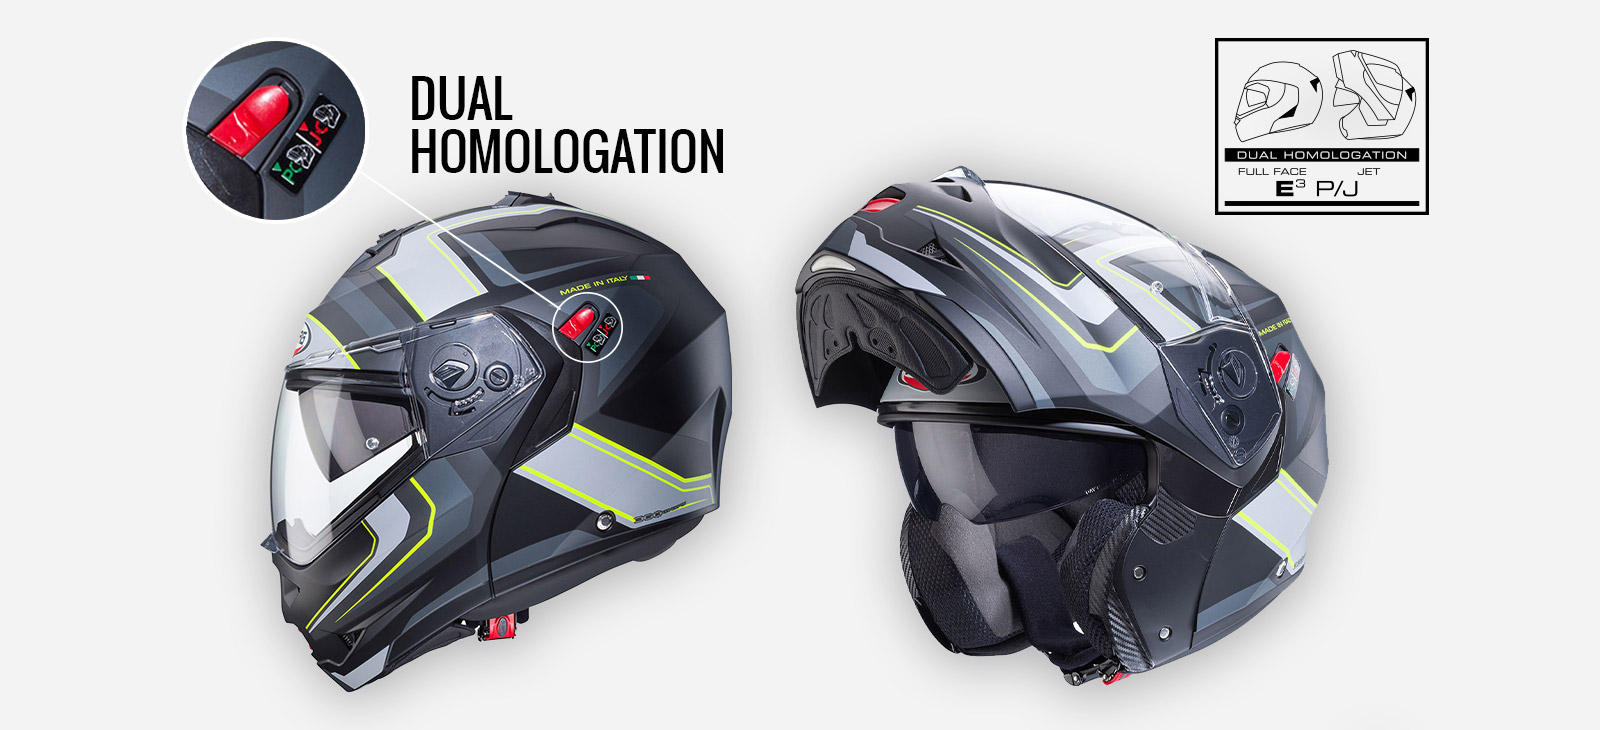 Helmet's features